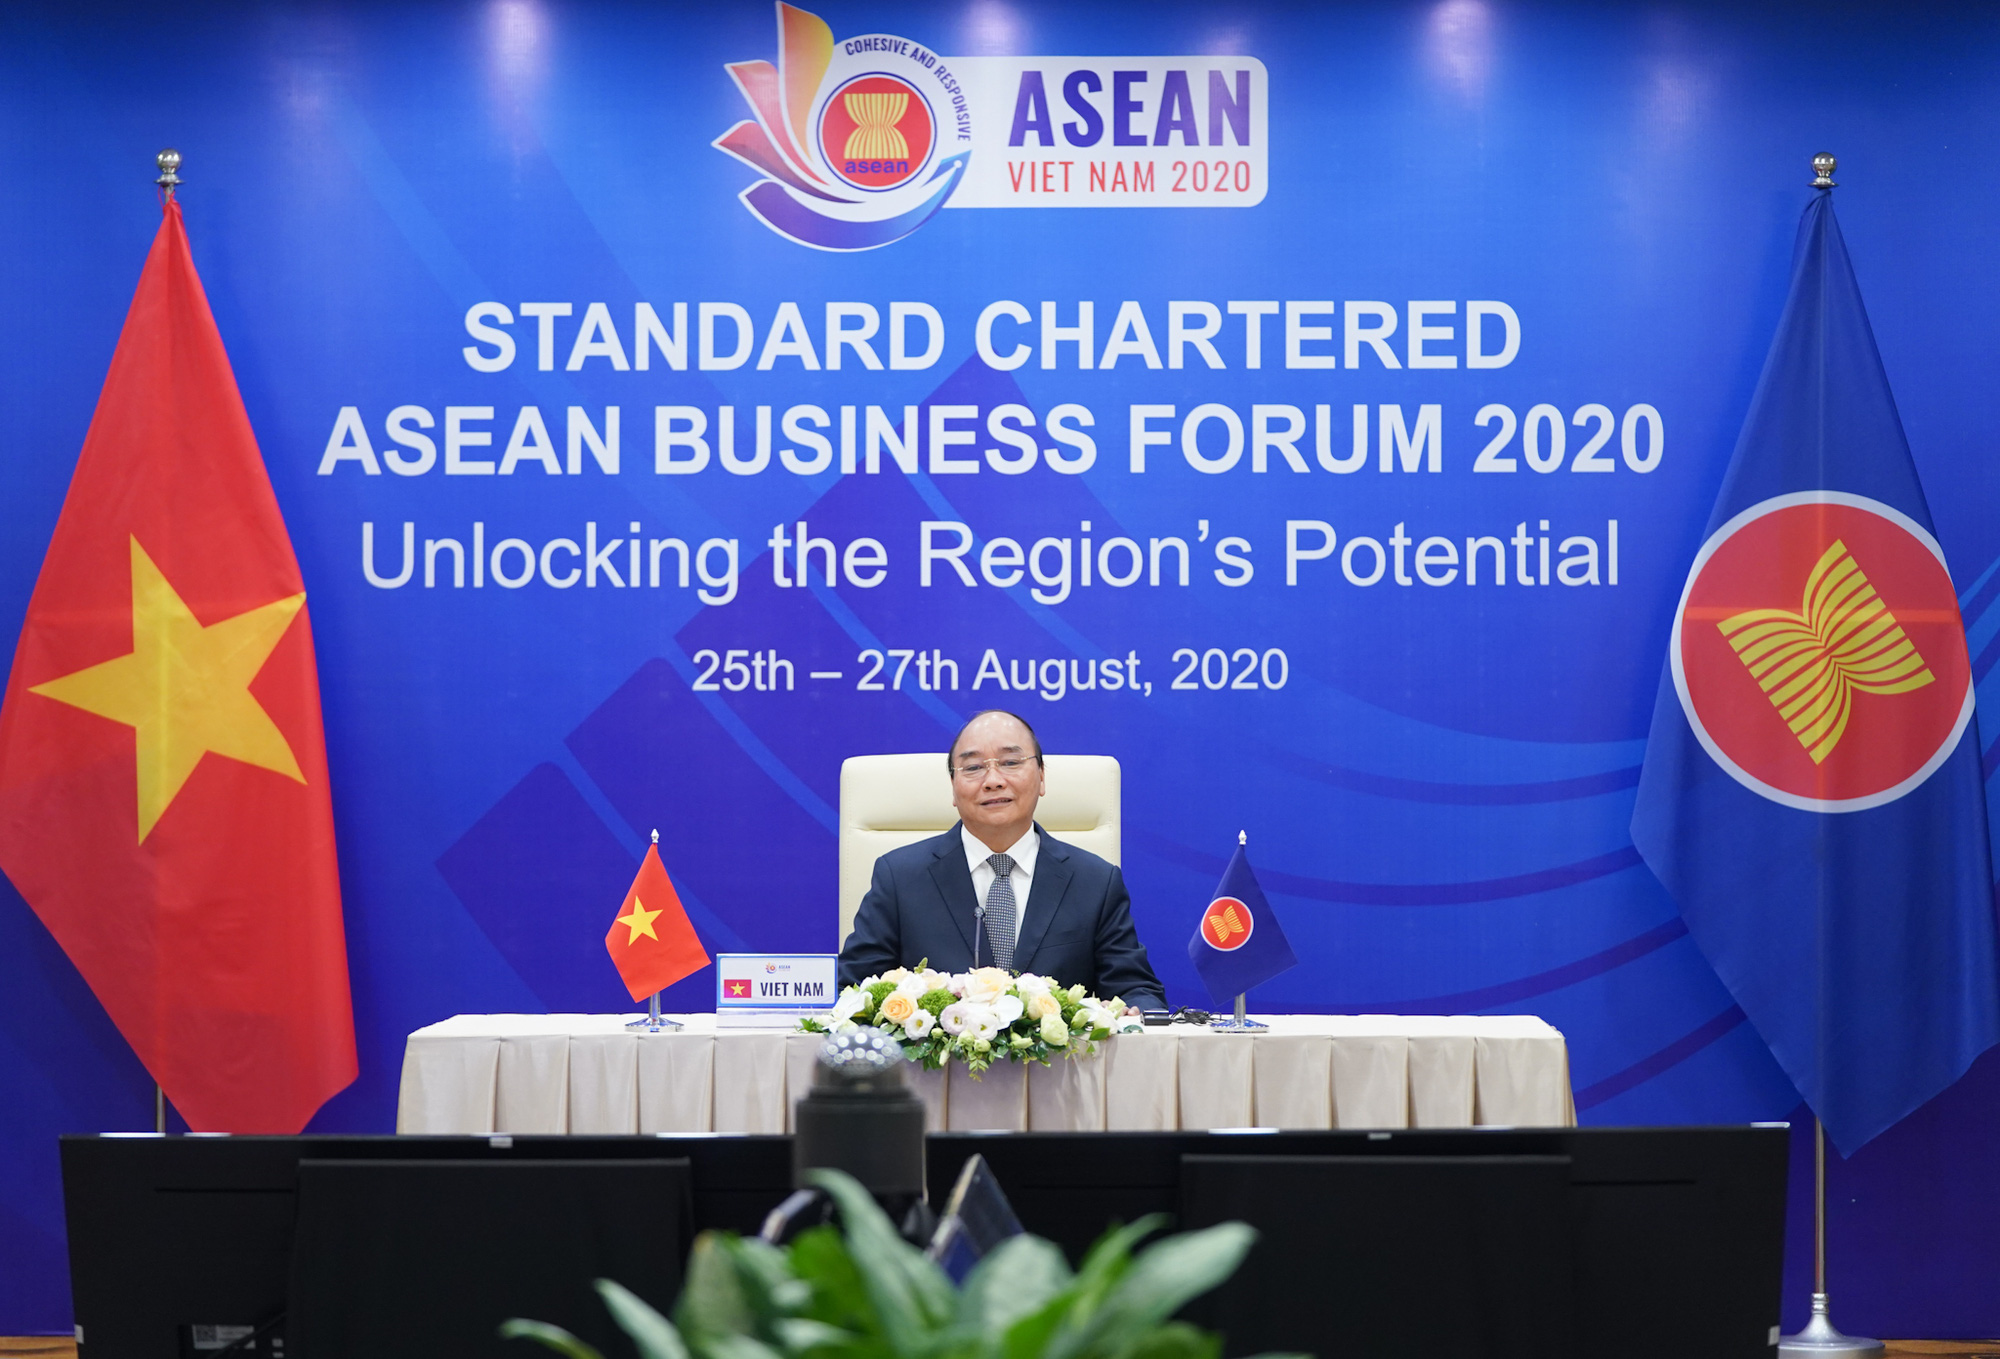 Thủ tướng chia sẻ quyết sách hợp tác kinh tế mạnh mẽ của ASEAN - Ảnh 1.